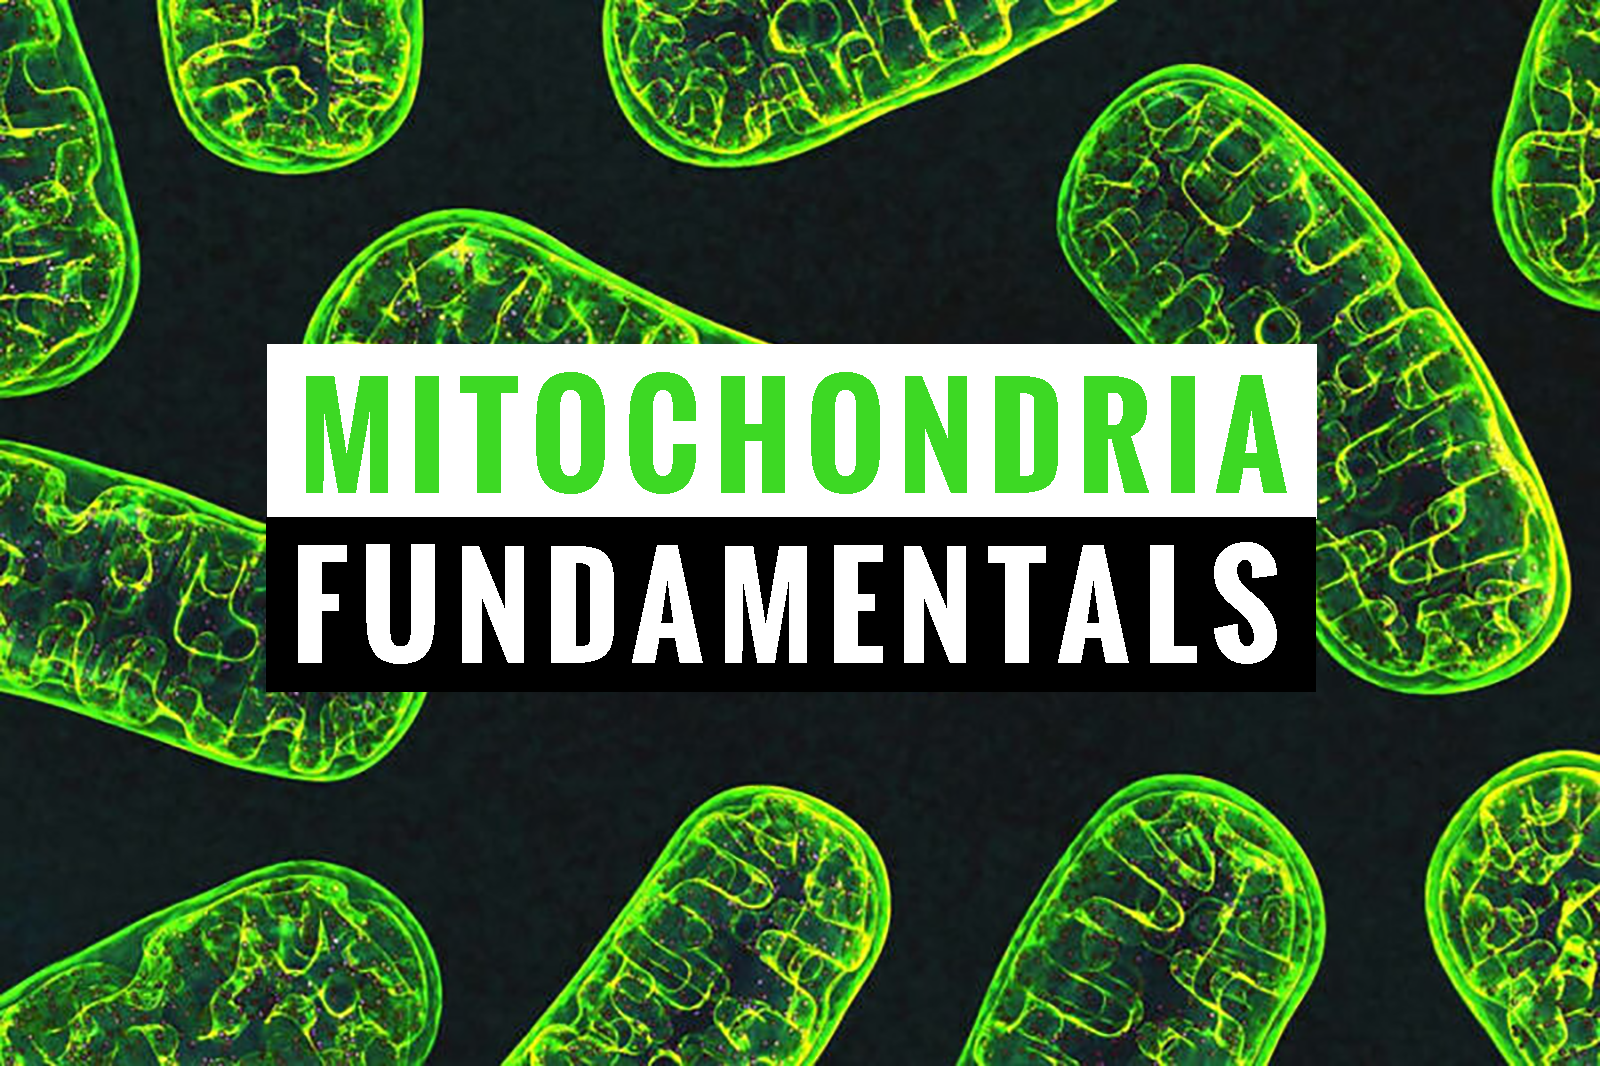 Mitochondria Fundamentals